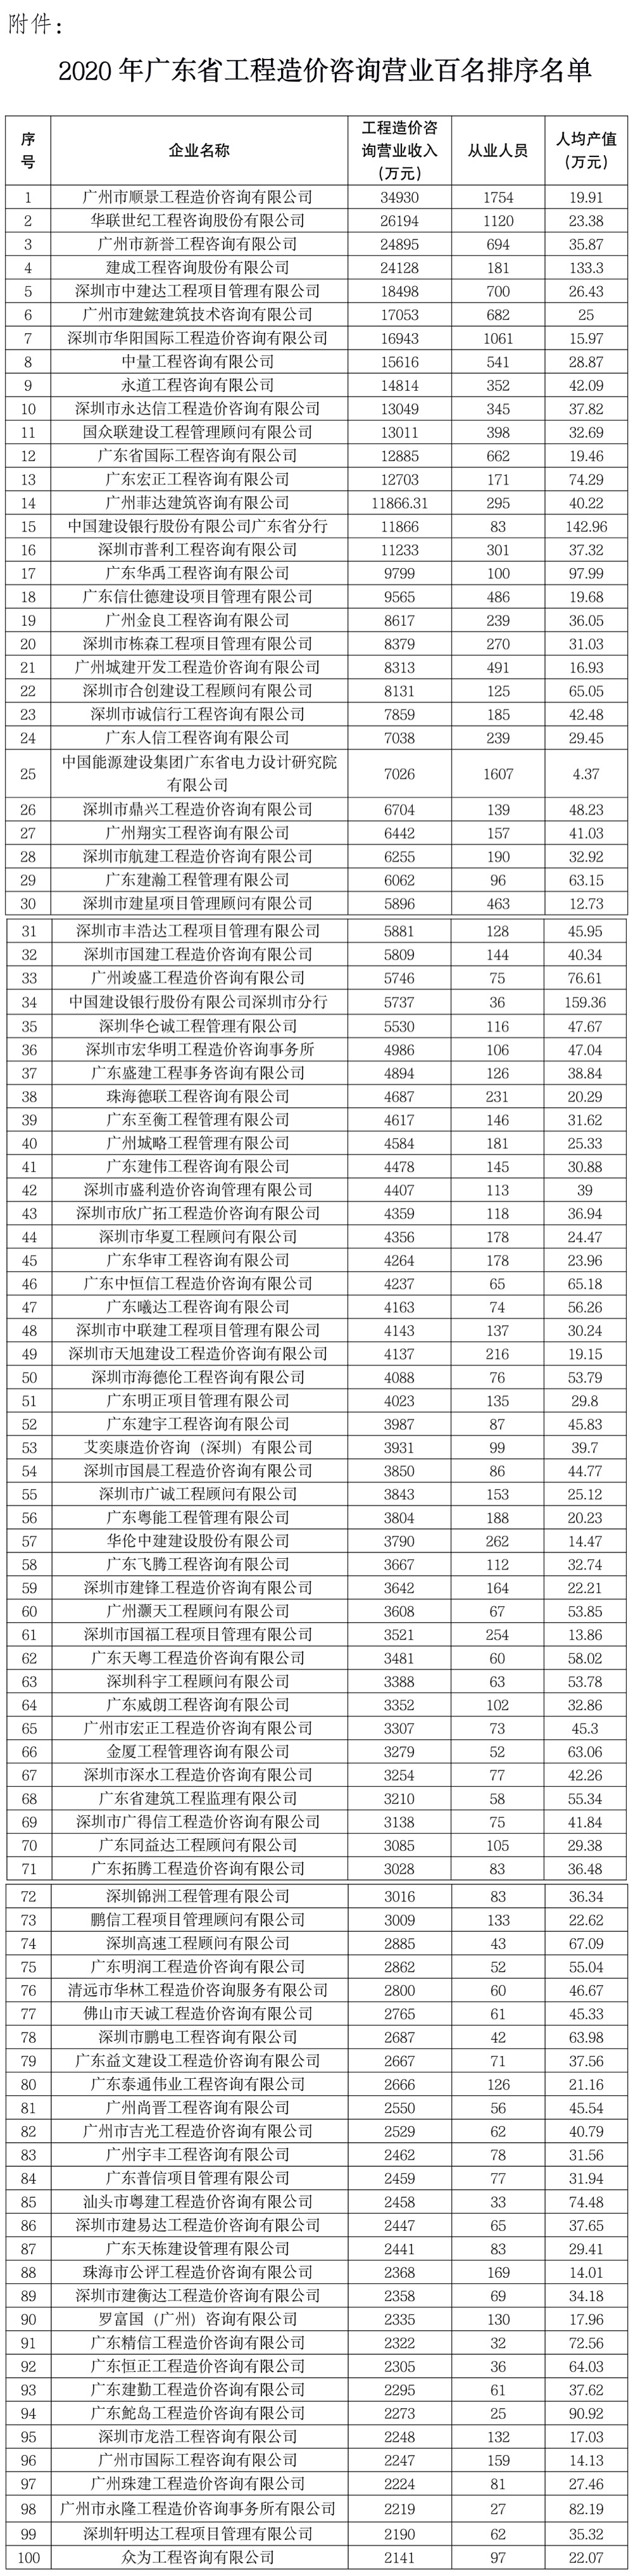 2020年广东省工程造价咨询企业营业收入百名排序名单2.JPG